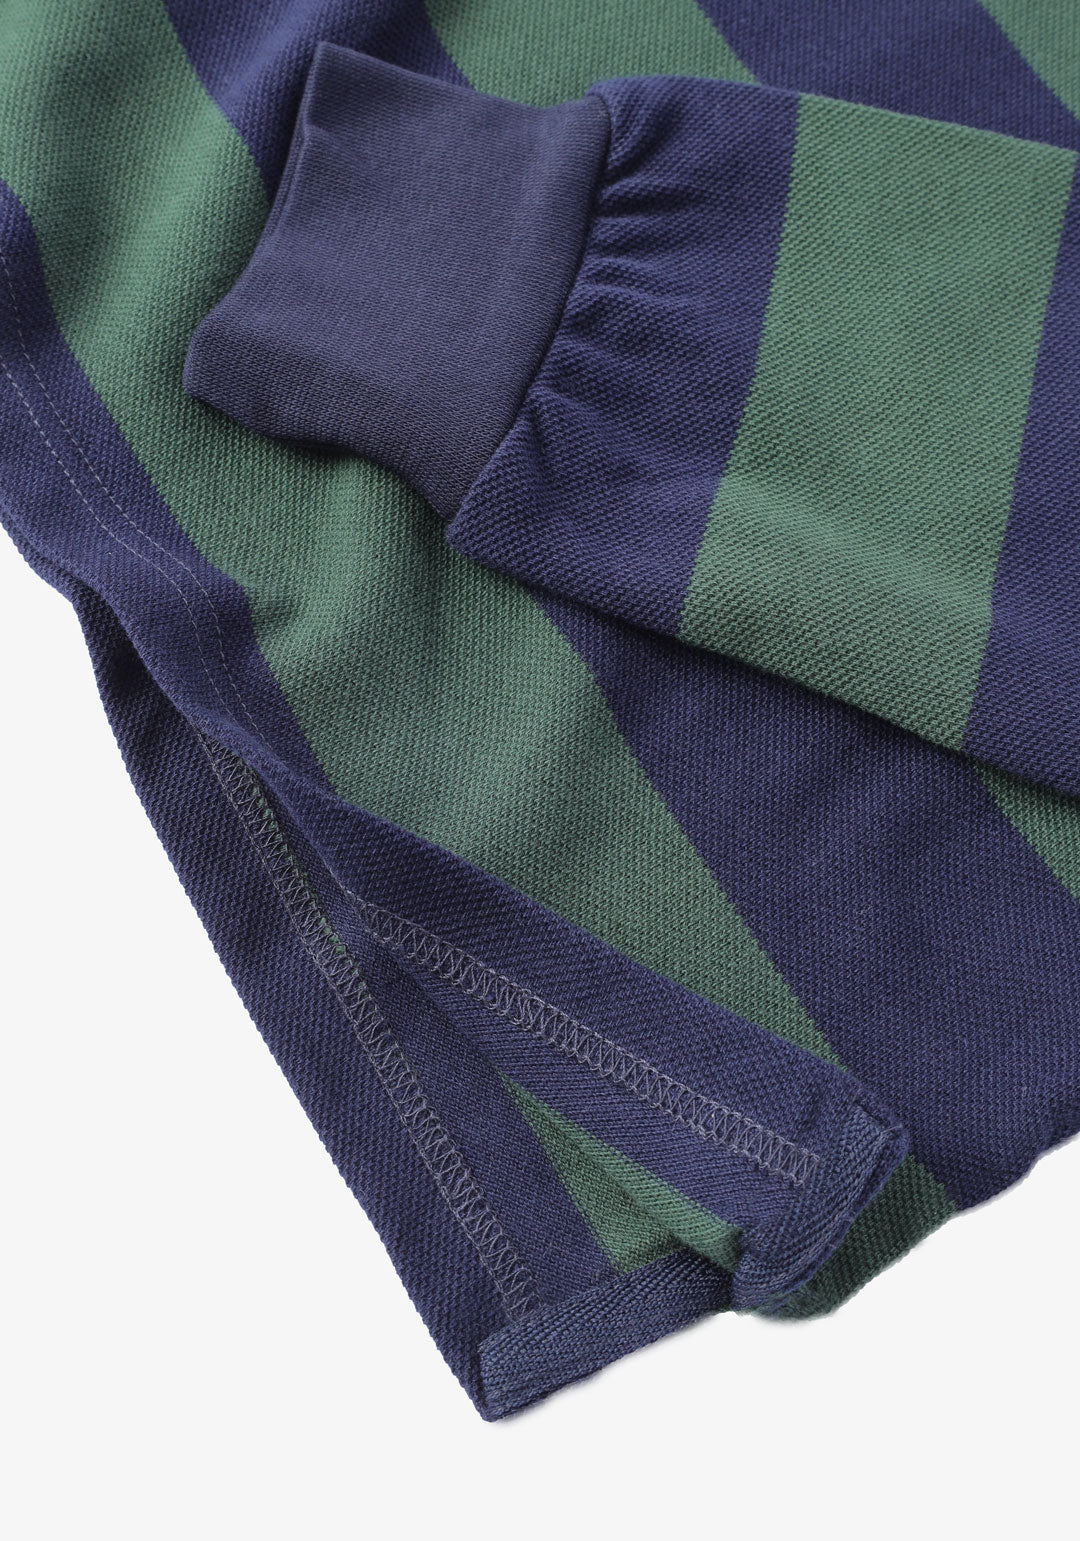 Green & Navy striped pique long sleeves polo